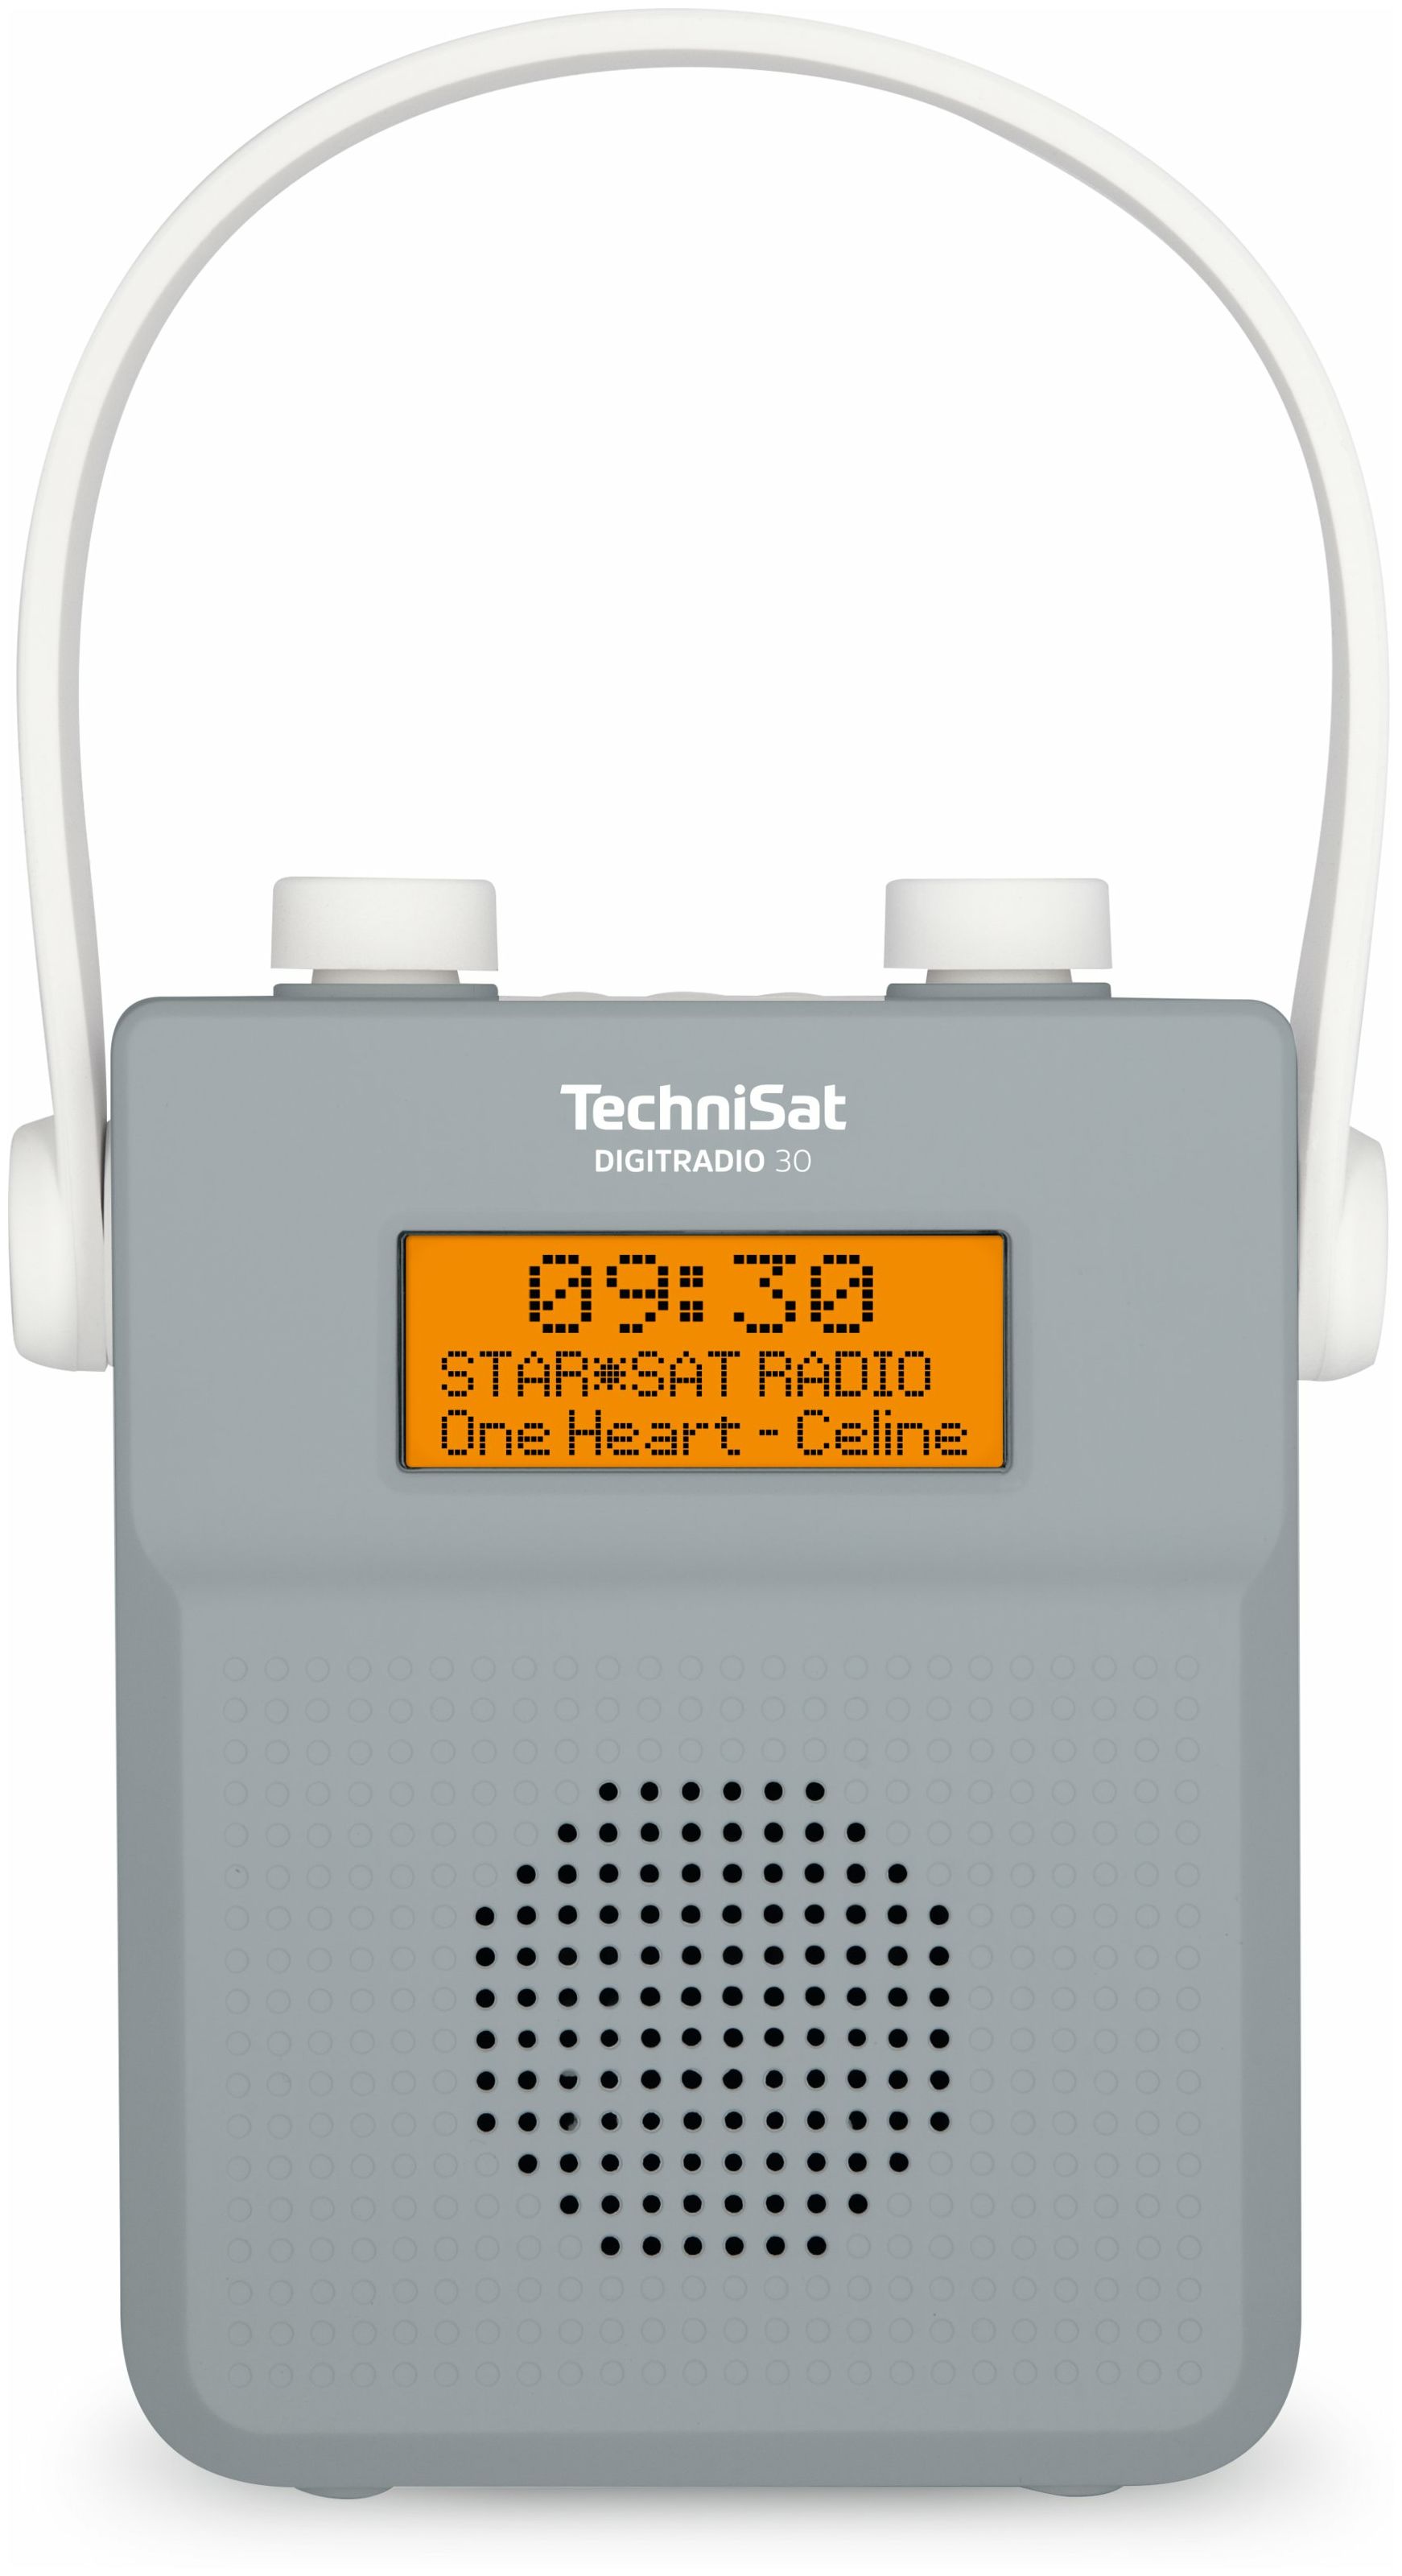 IPX5 (Grau) Technomarkt TechniSat von FM DAB+, Radio 30 Digitradio Bluetooth expert Tragbar